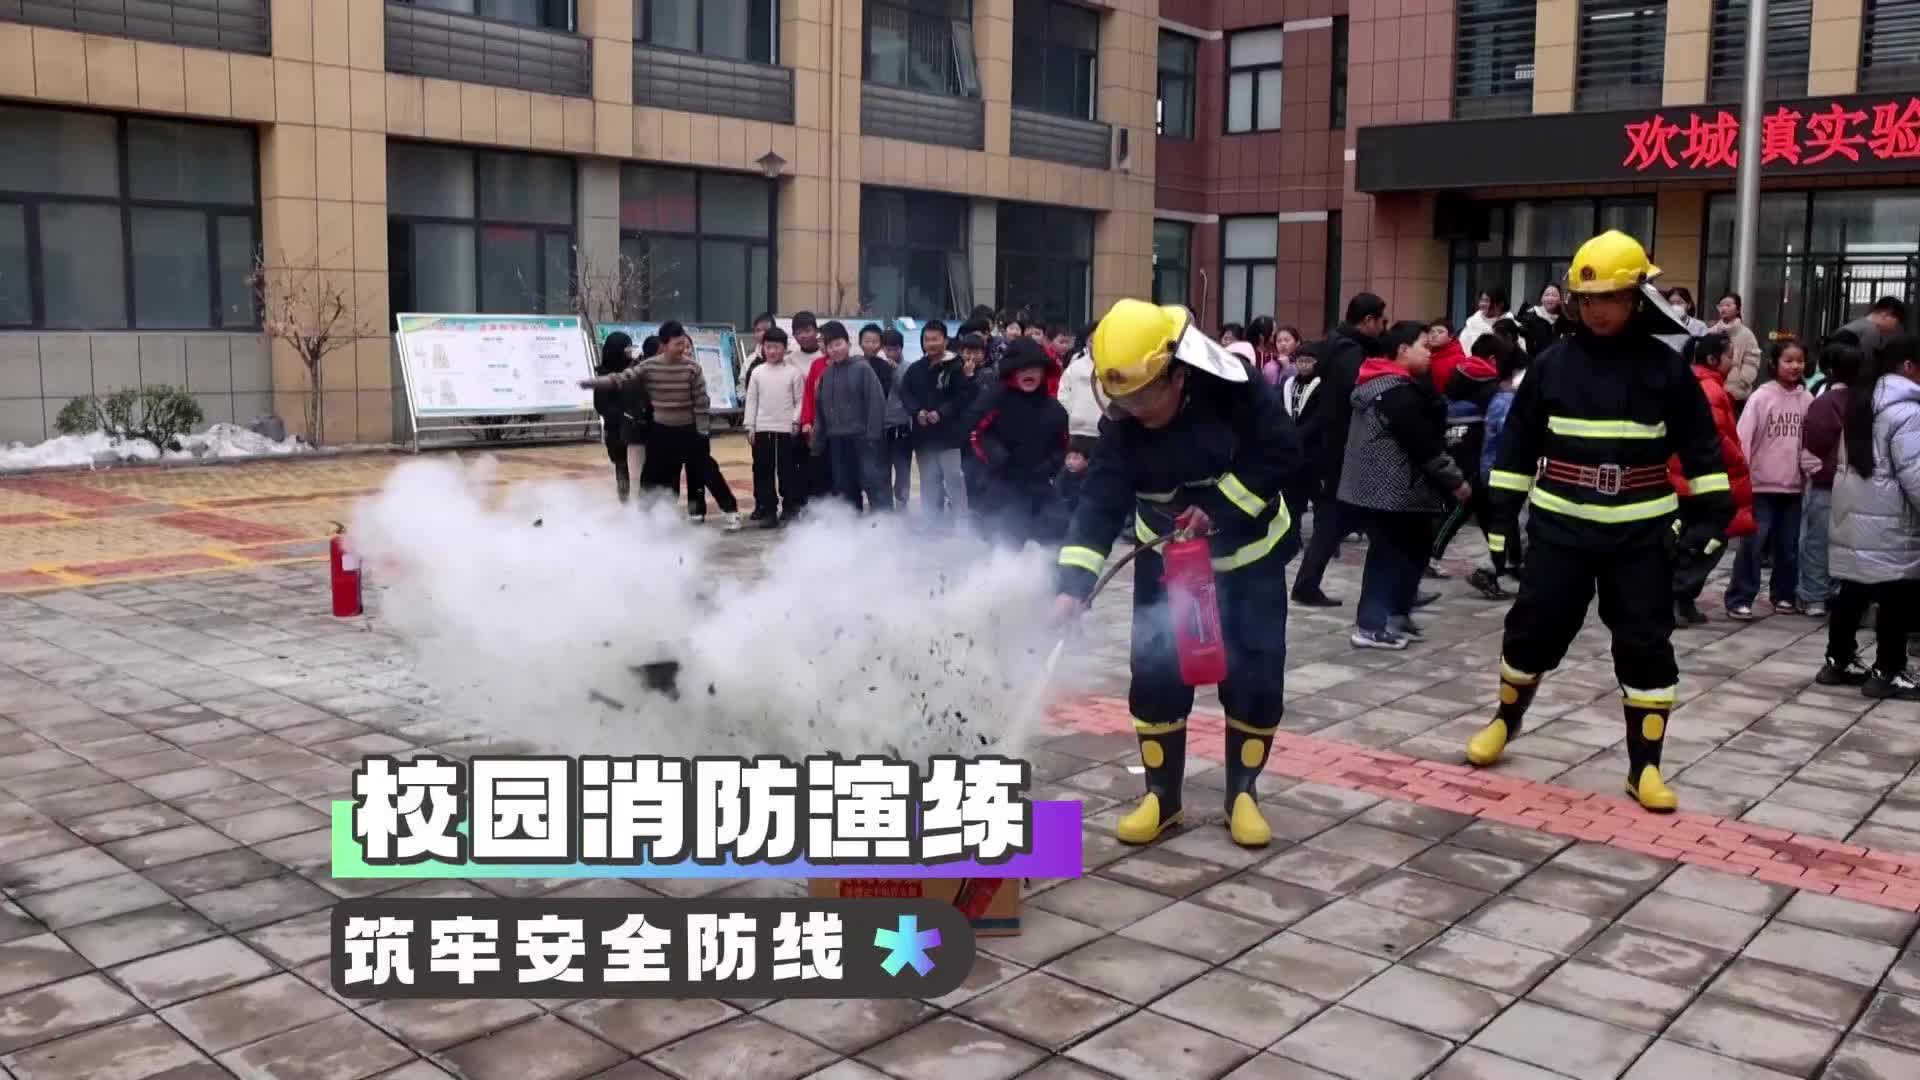 更济宁 | 校园消防演练 筑牢安全防线